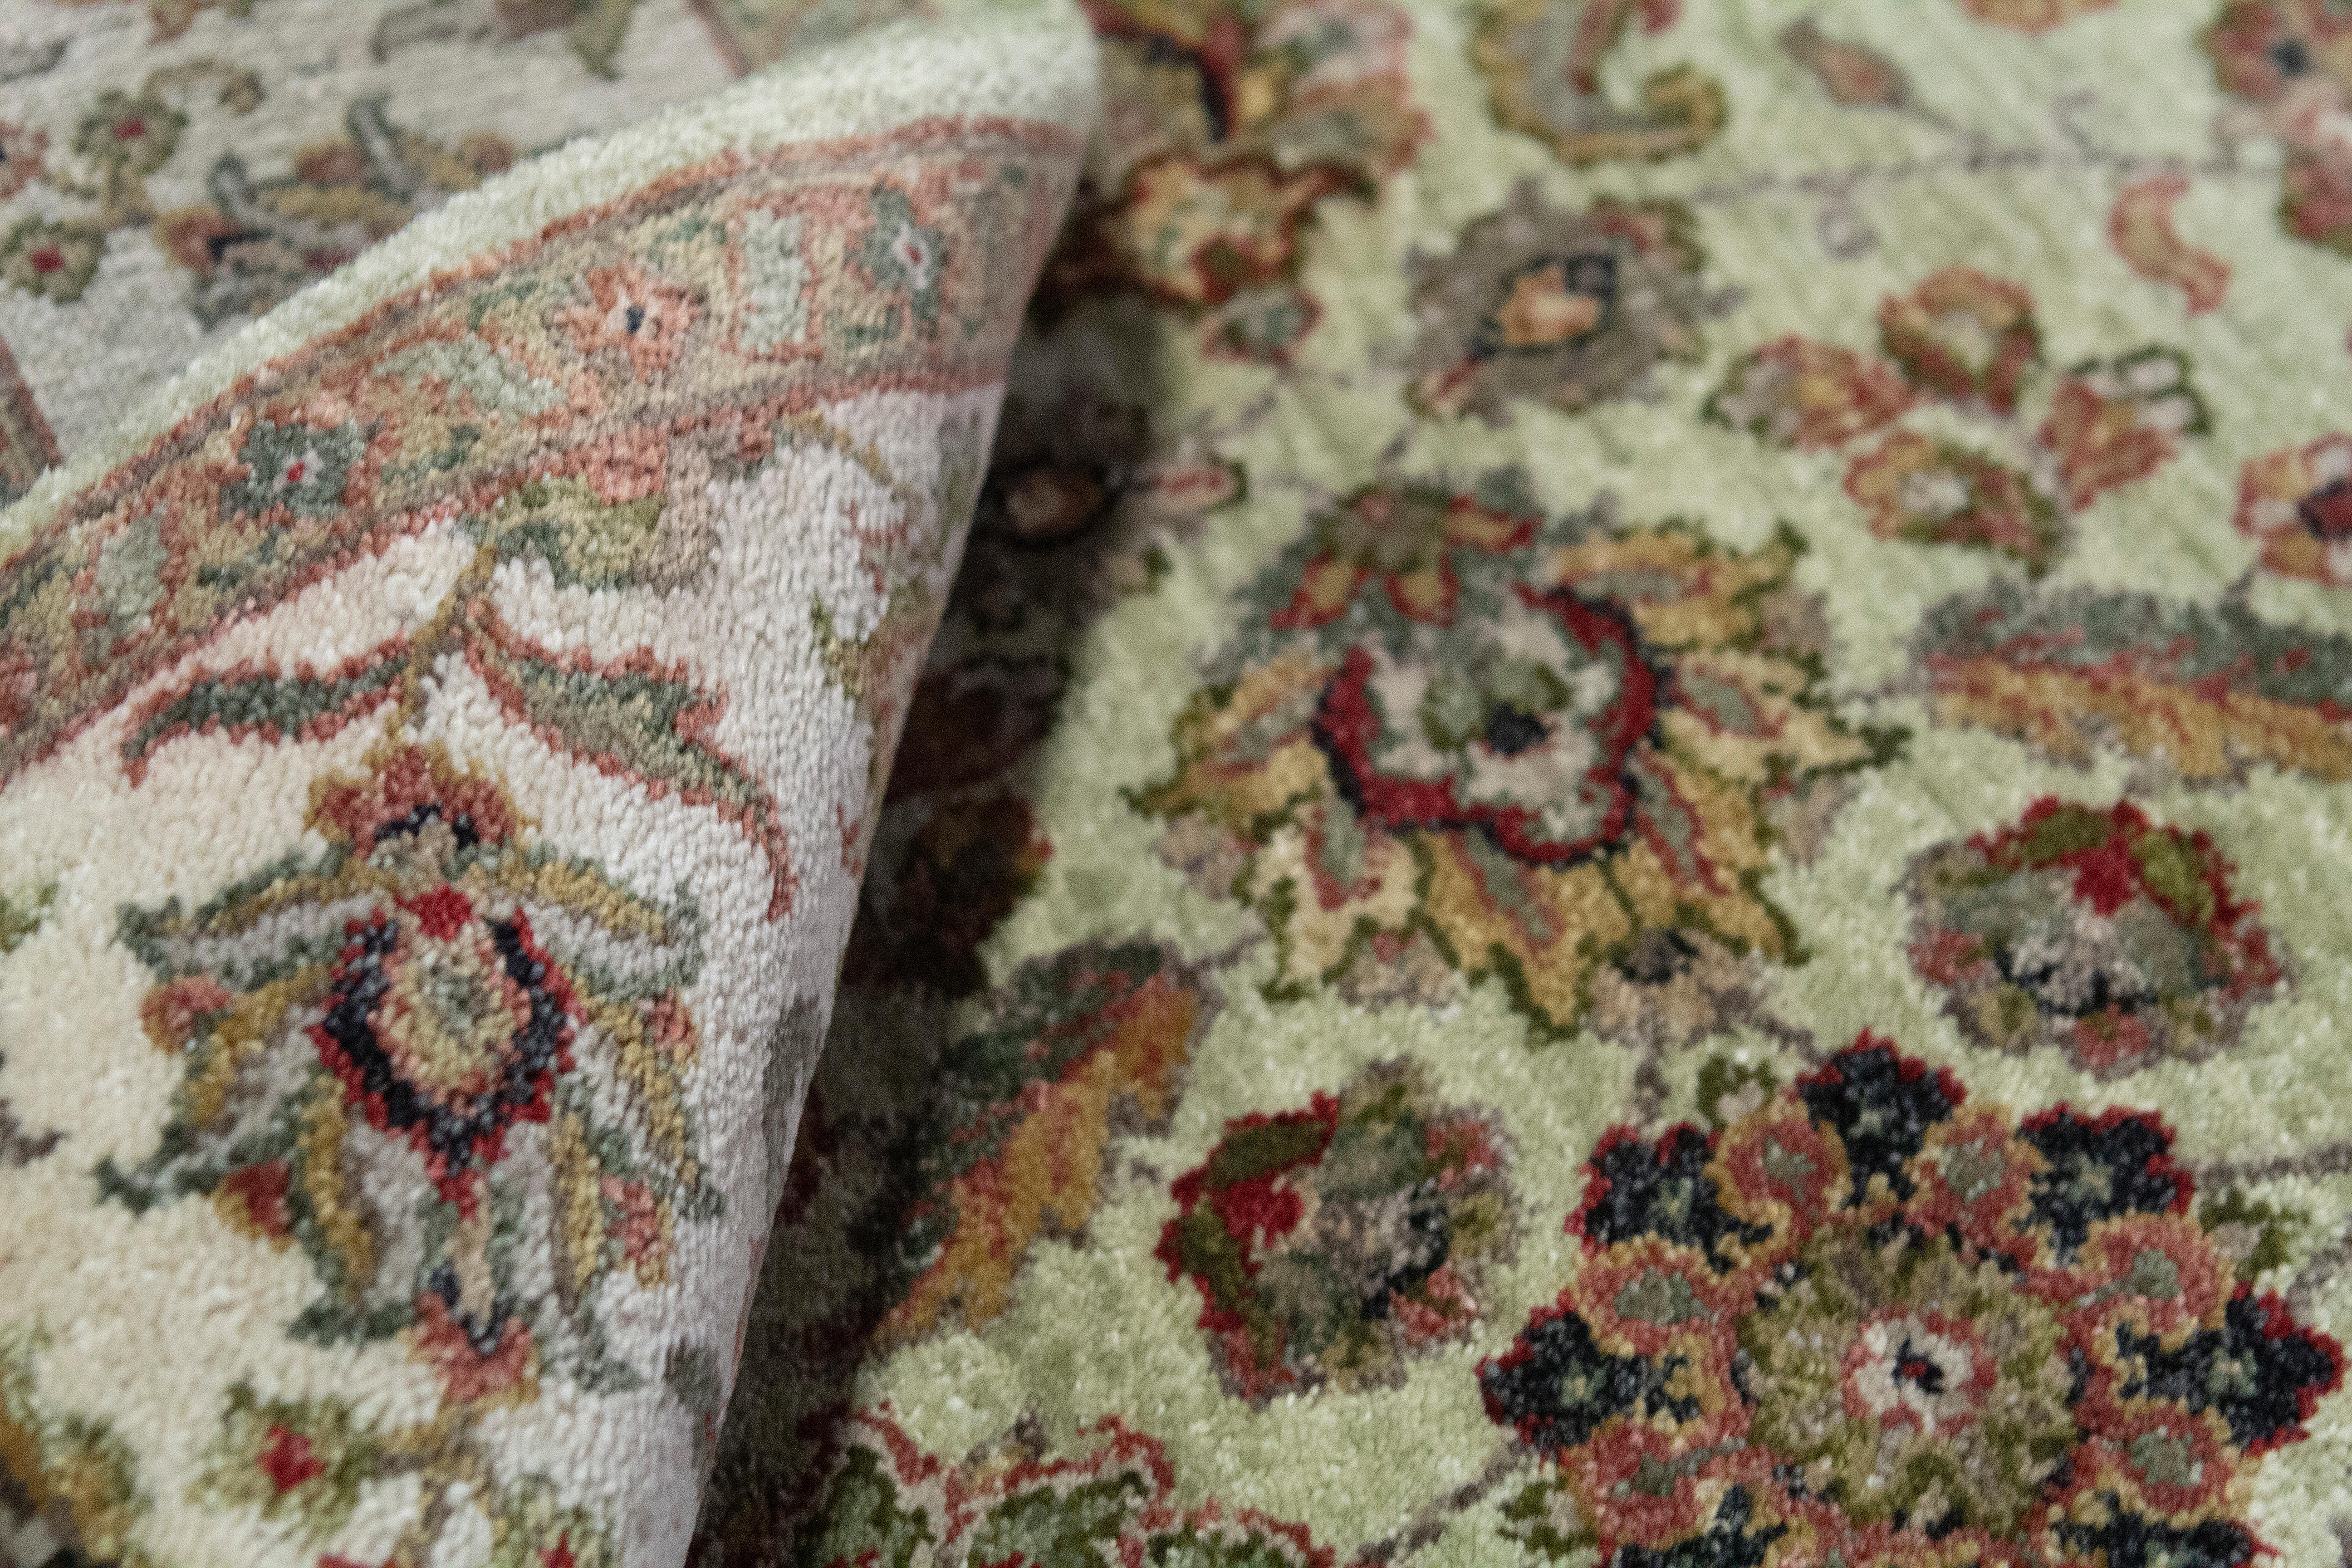 Eine Einführung in die meisterhafte Teppichweberei aus Indien. Diese Designs sind eine Wiederbelebung von Agra-Mustern aus der orientalischen Mogulzeit. Was diese handgewebten Agra-Muster auszeichnet, sind die großen floralen Palmetten. Die neue